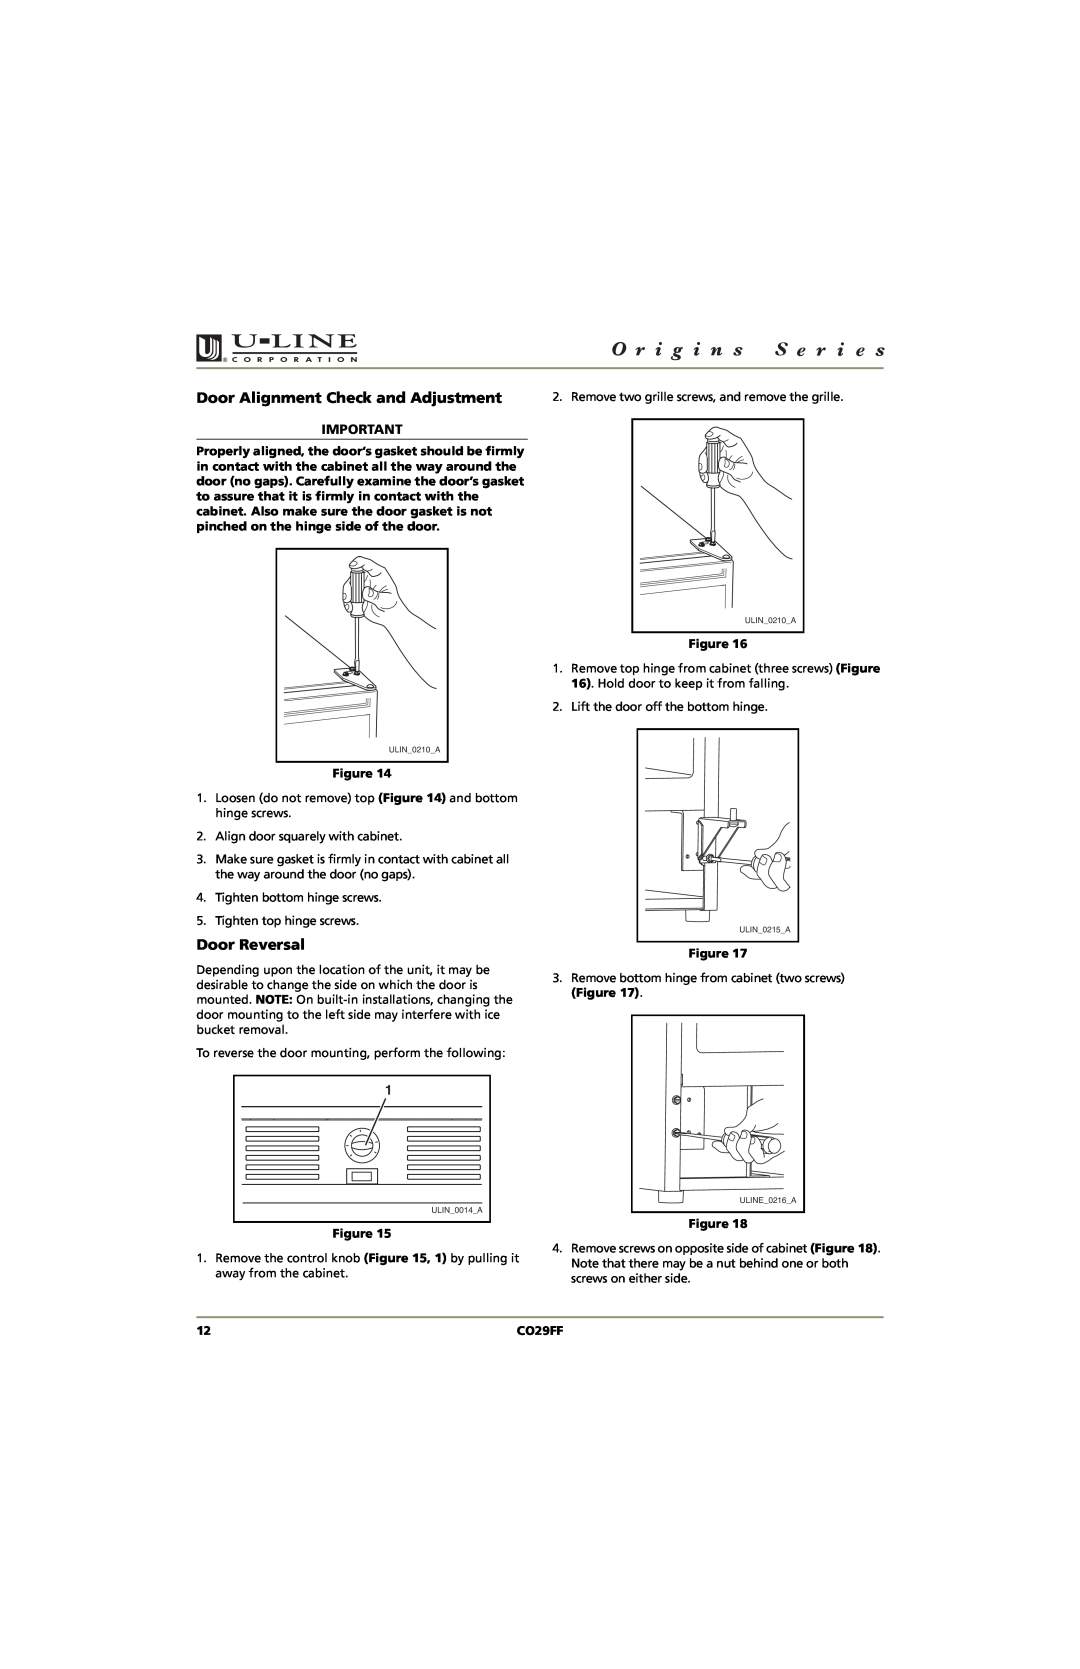 U-Line CO29FF manual Door Alignment Check and Adjustment, Door Reversal 